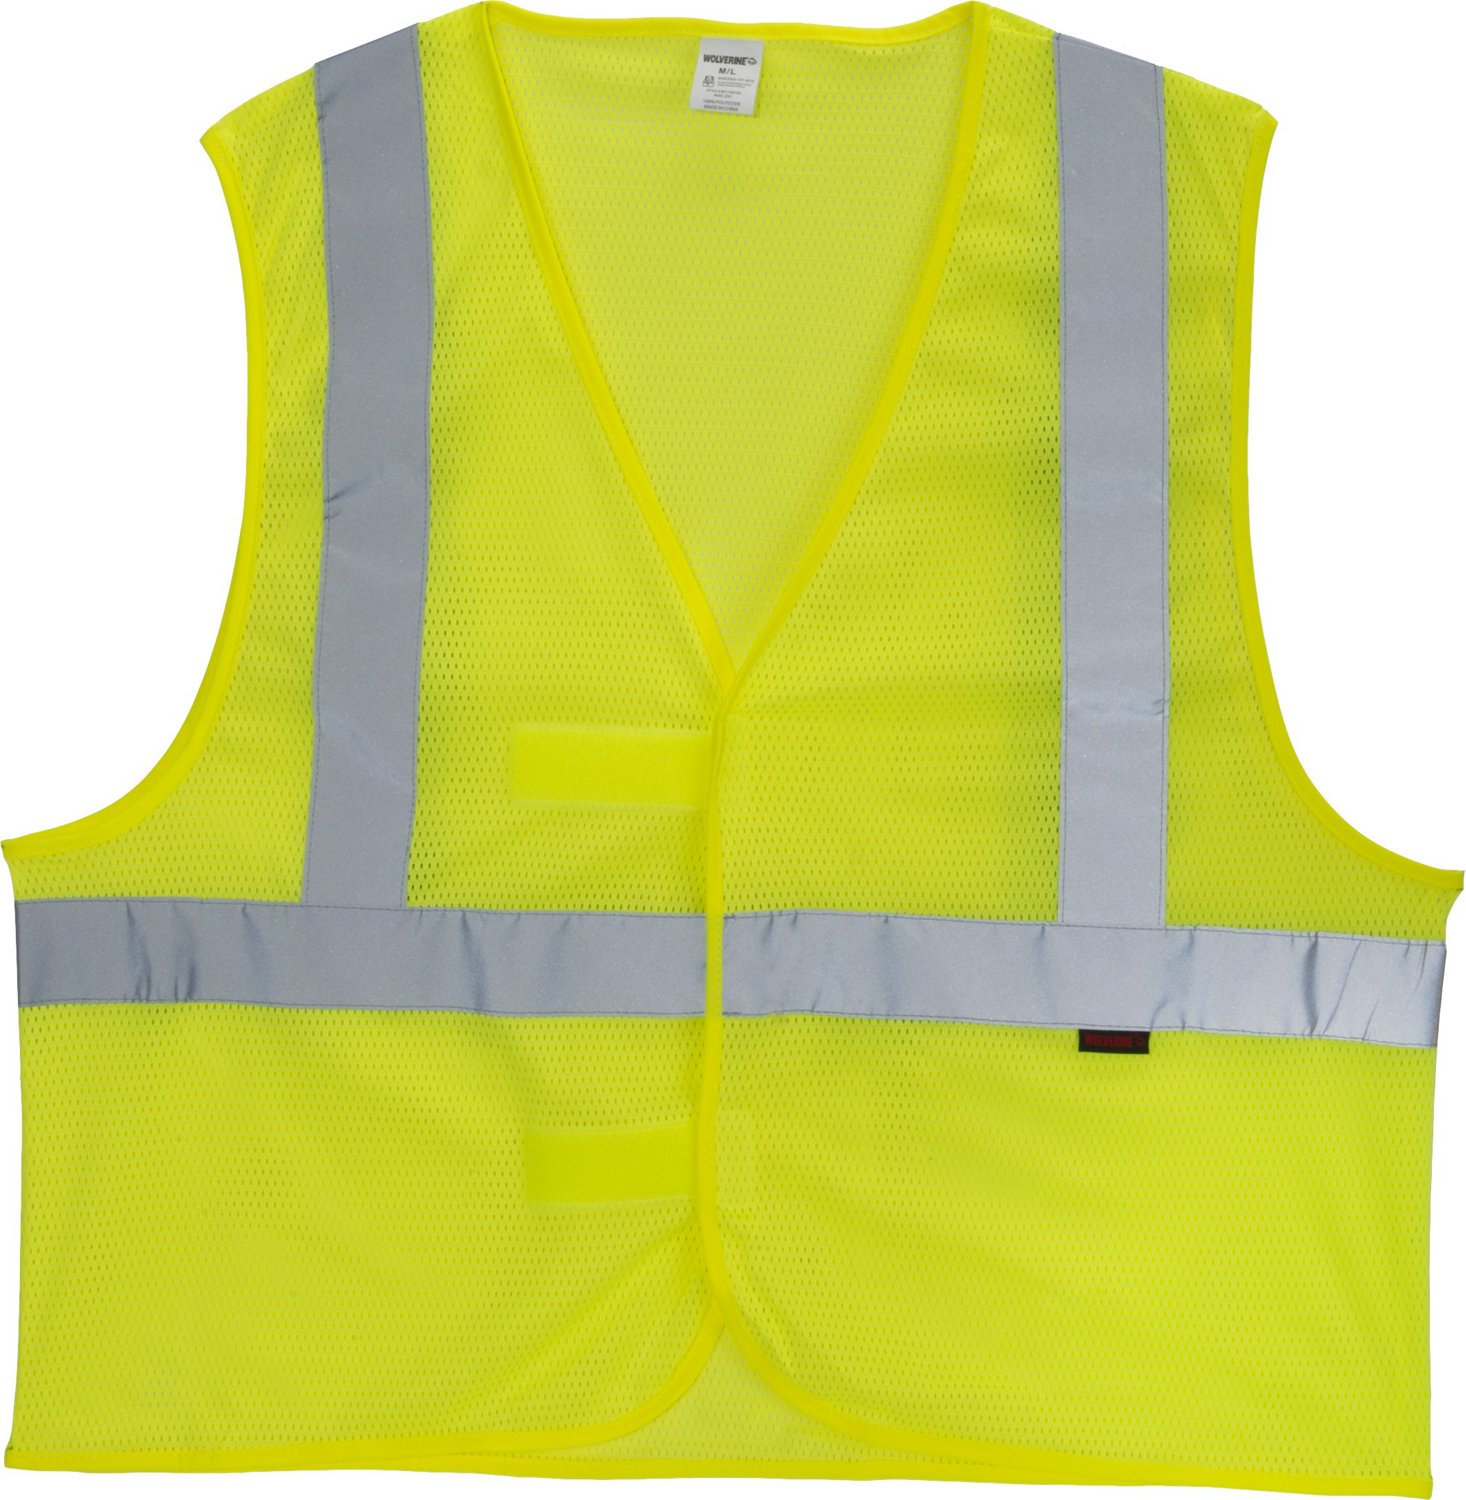 Wolverine Men's Hi-Vis Packable Safety Vest